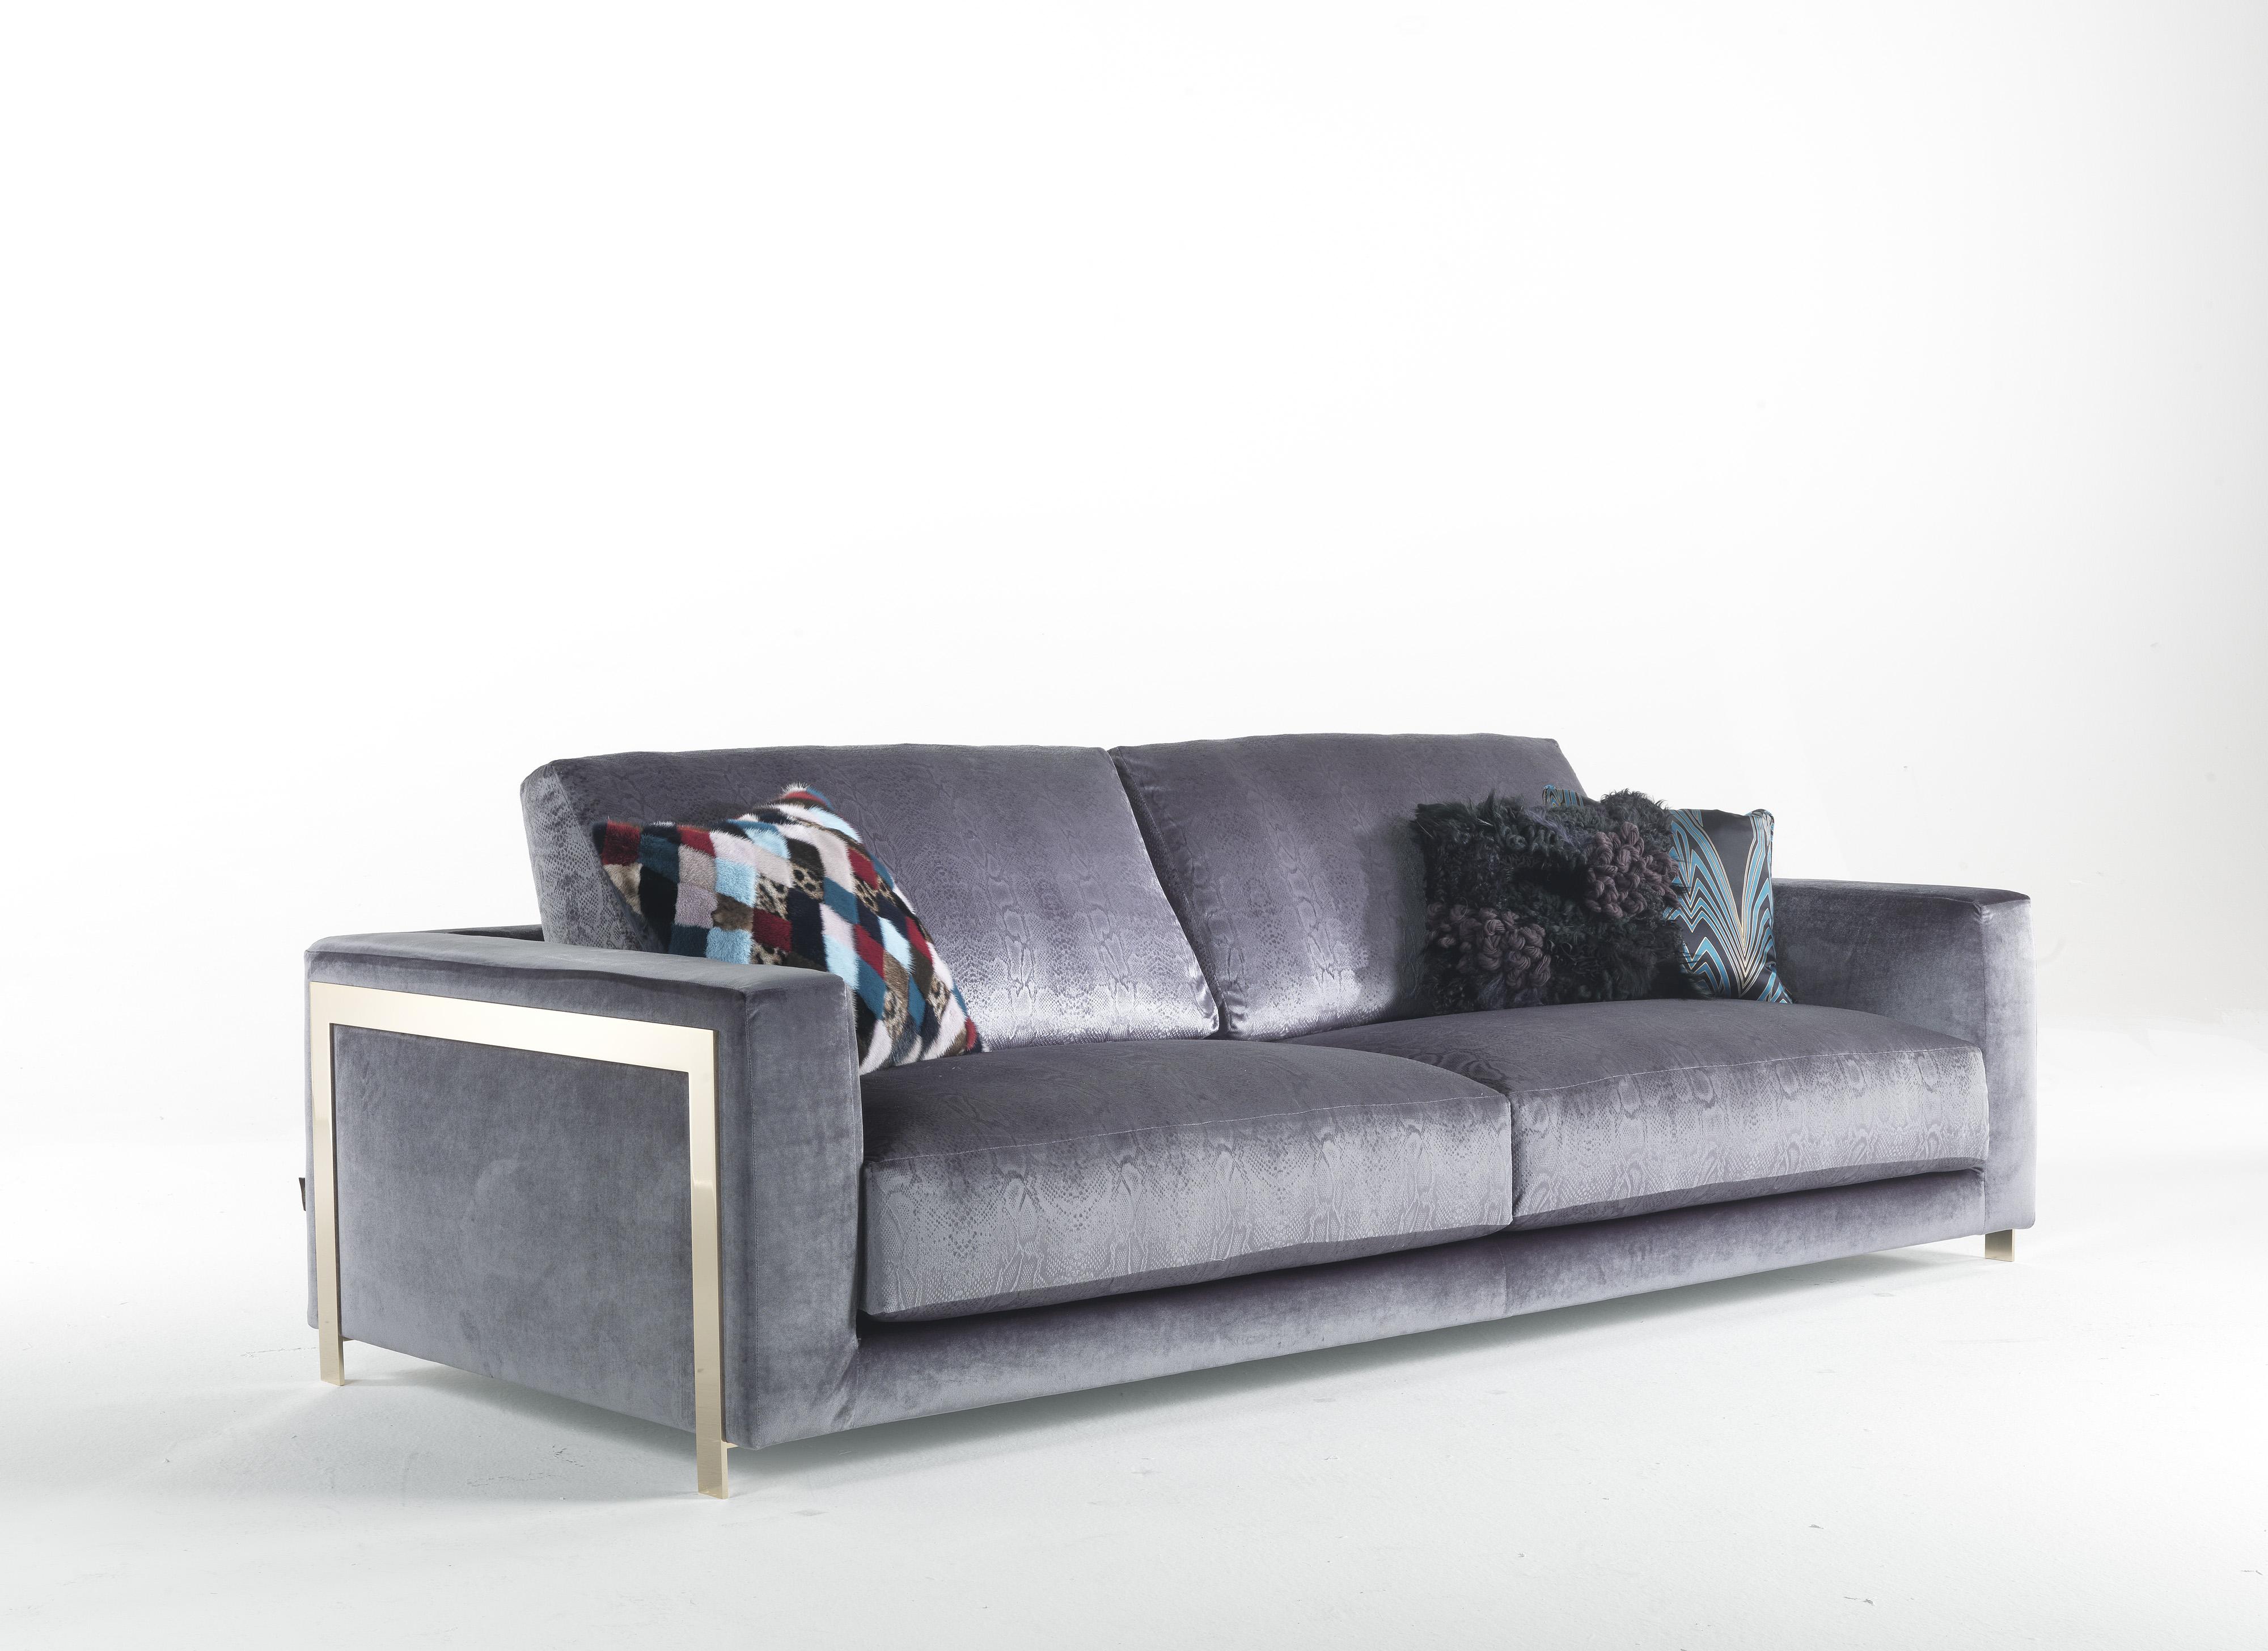 Ein Design-Sofa, das auf dünnen, goldfarbenen Beinen das behagliche Gefühl von einladender Wärme und komfortabler Weichheit vermittelt, die sich vom Boden abhebt.
Manhattan 3-Sitzer Sofa Struktur aus Pappelholz und Schaumstoff. Struktur Polsterung